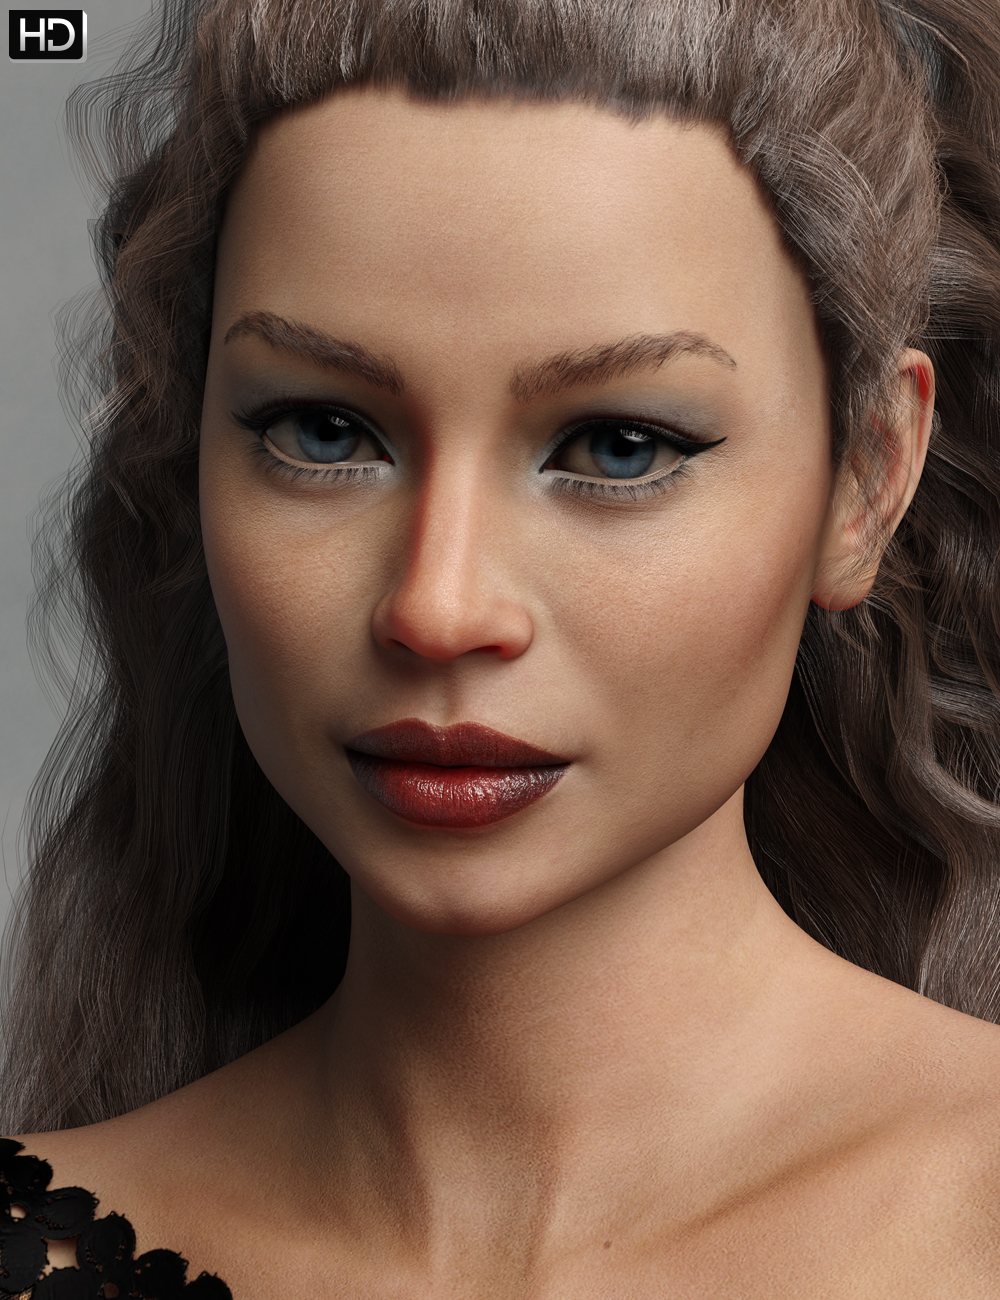 Julieta HD for Gabriela 8 by: Emrys, 3D Models by Daz 3D